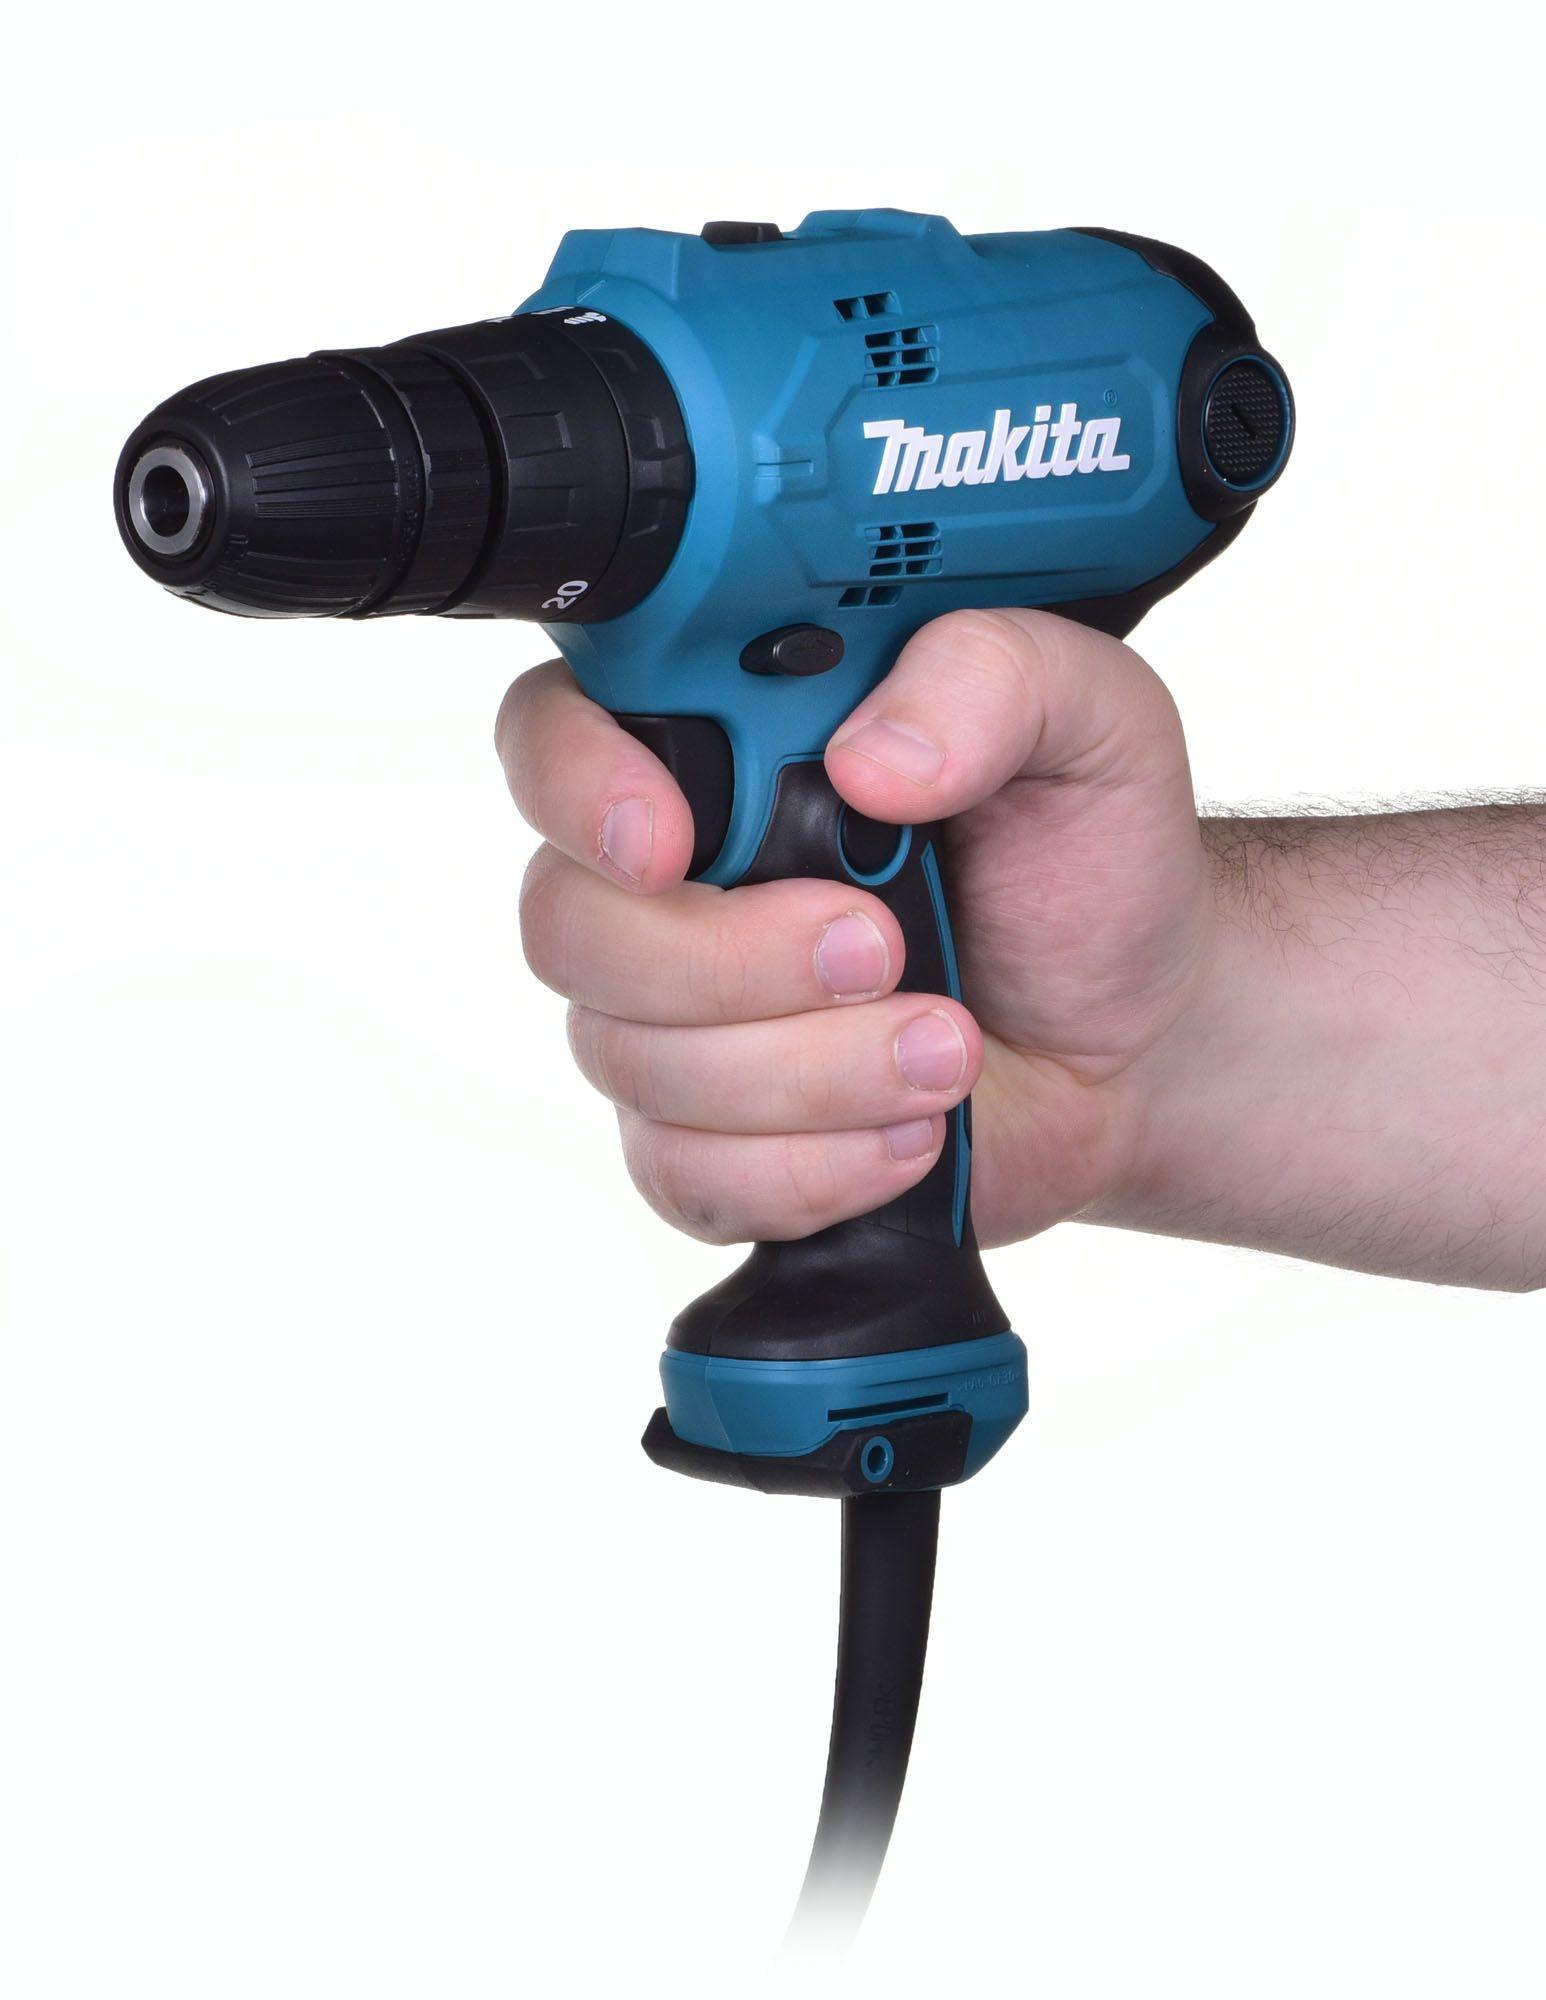 HP0300 Makita Cordless drill